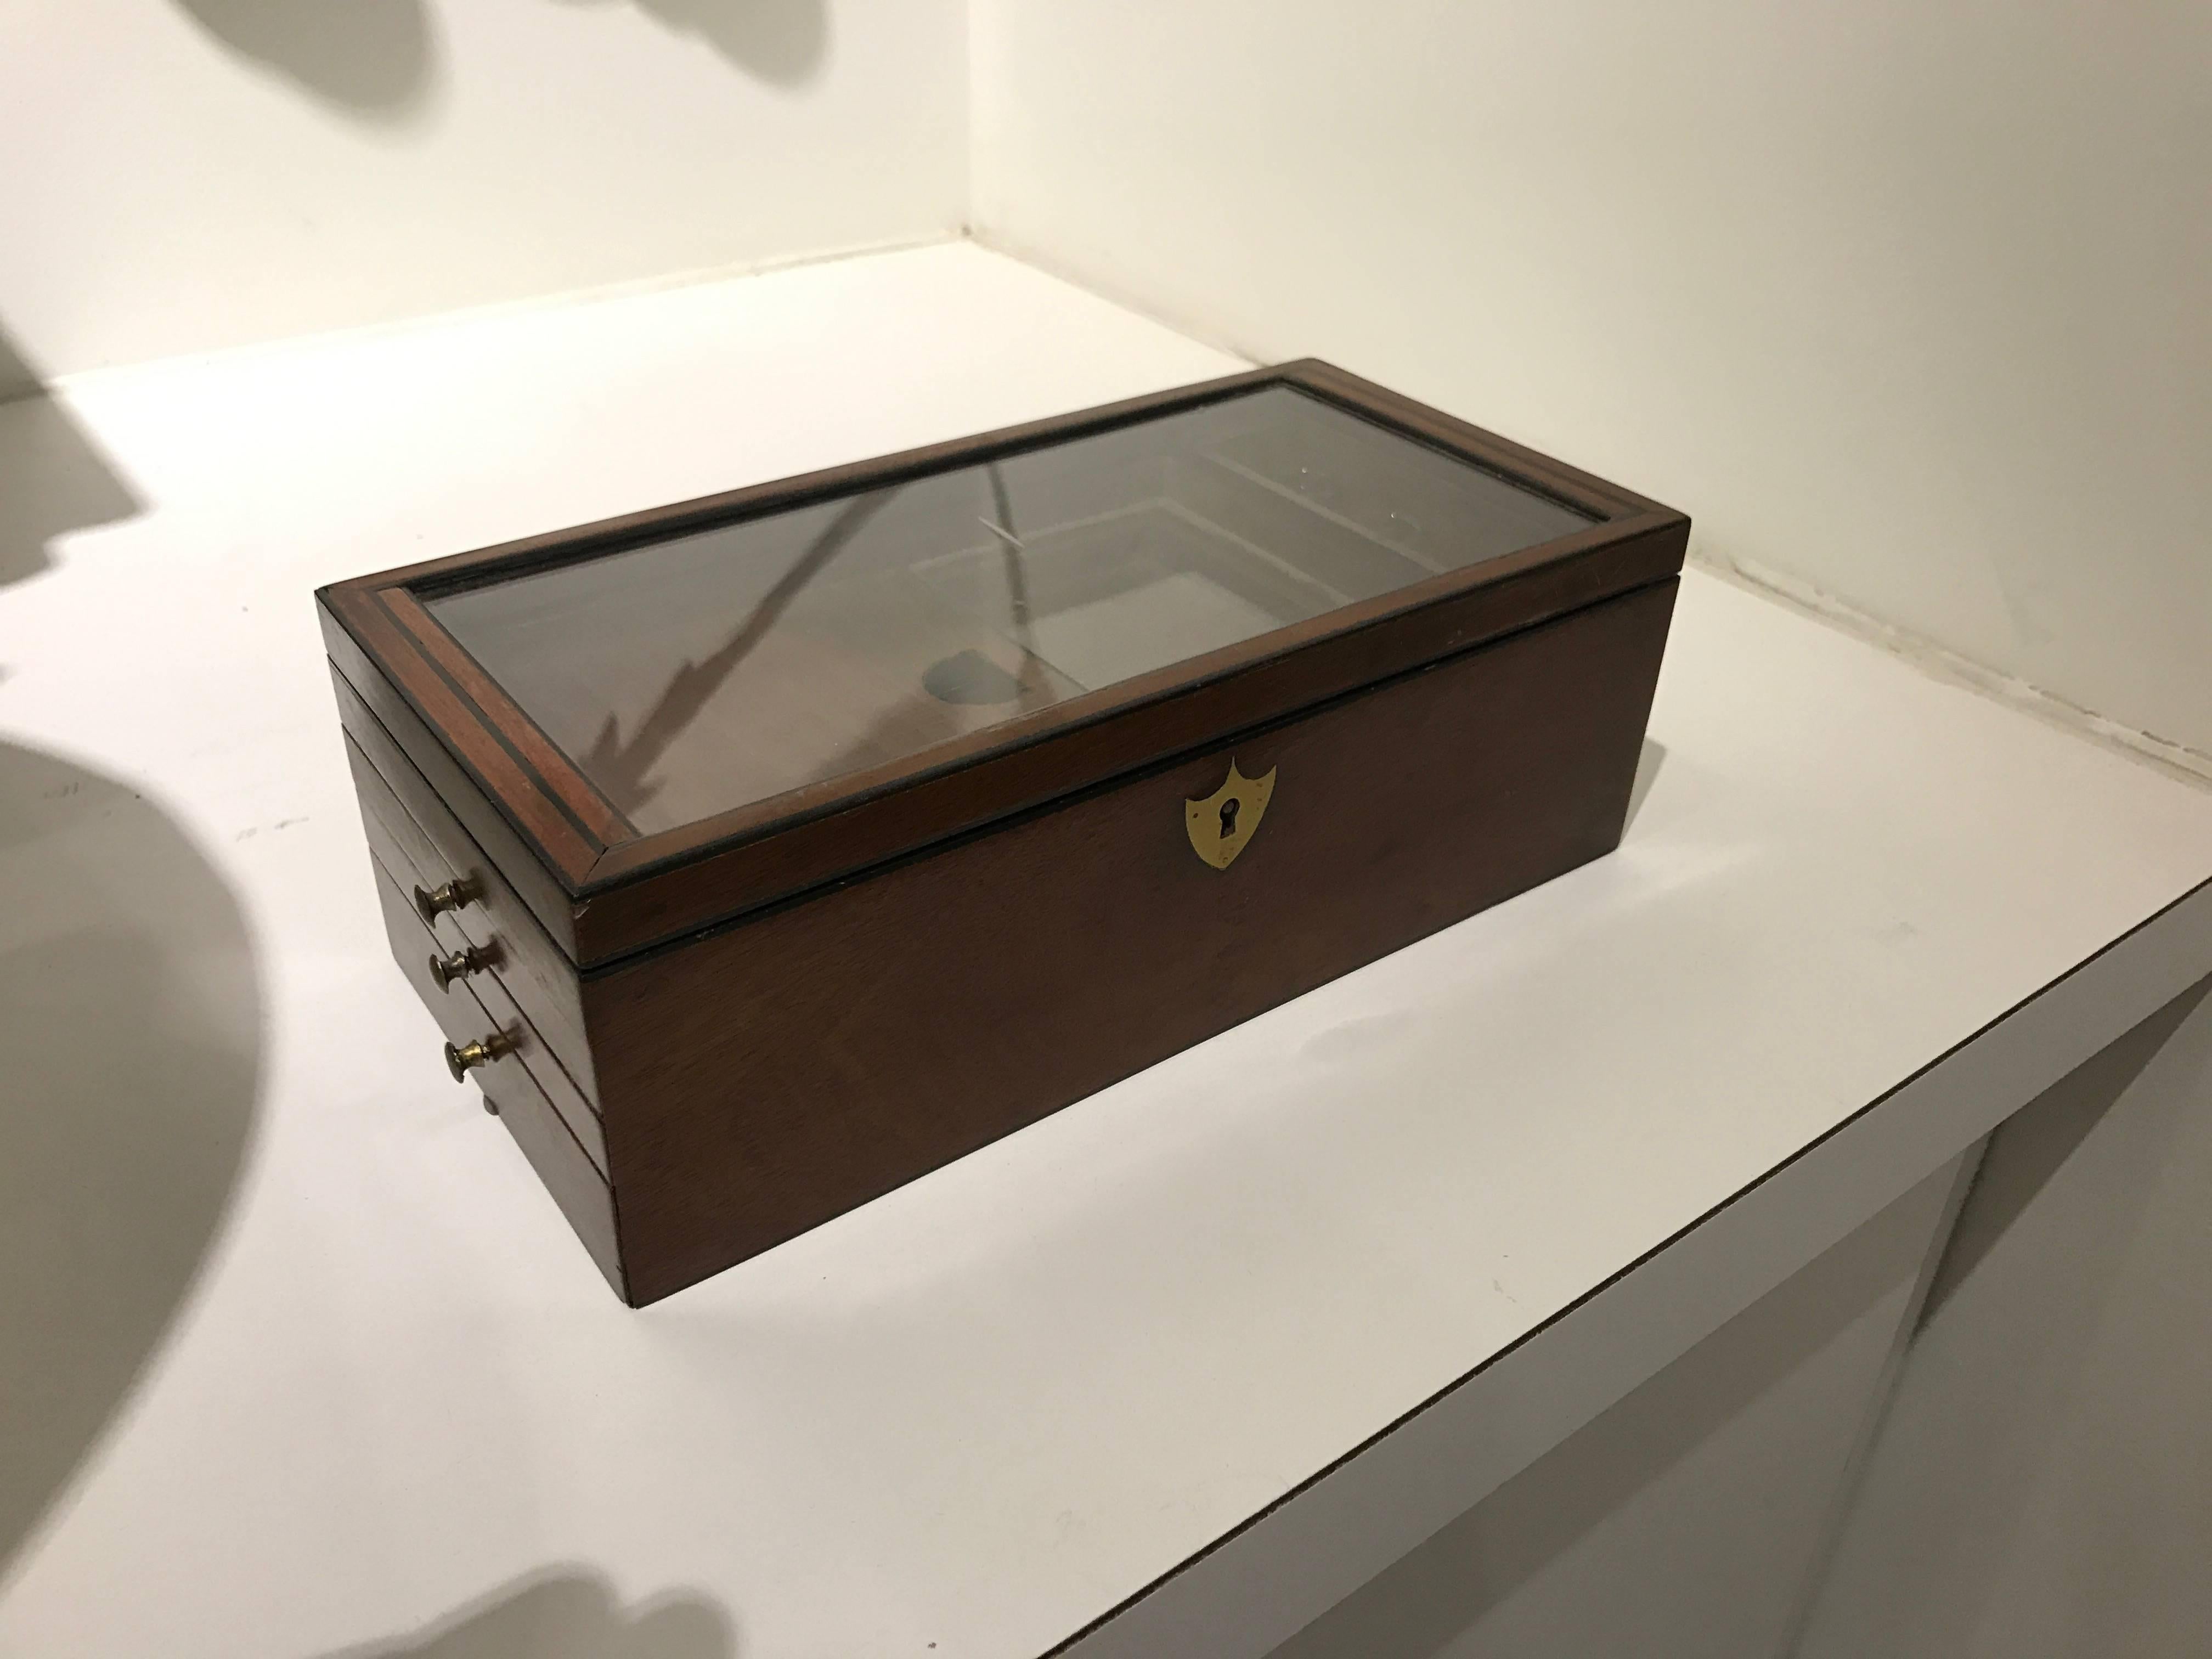 19th century mahogany document box with key.